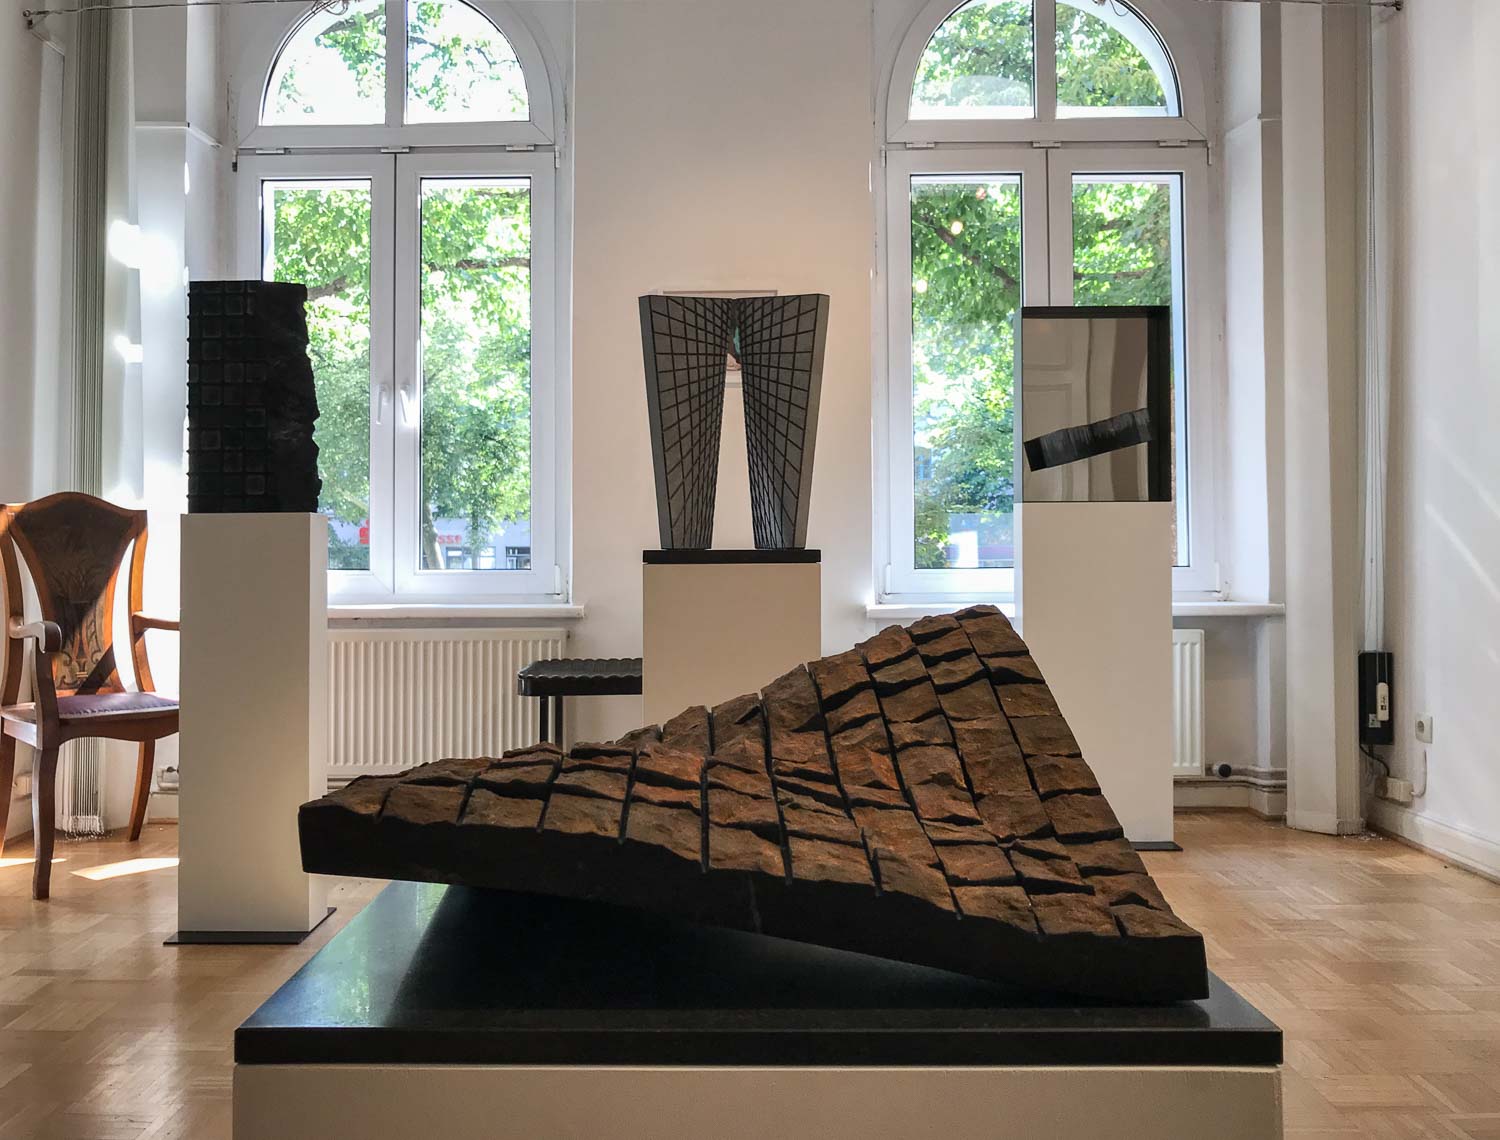 Galerie Sievi zeigt Sabine Puschmann und Martin Hollebecq